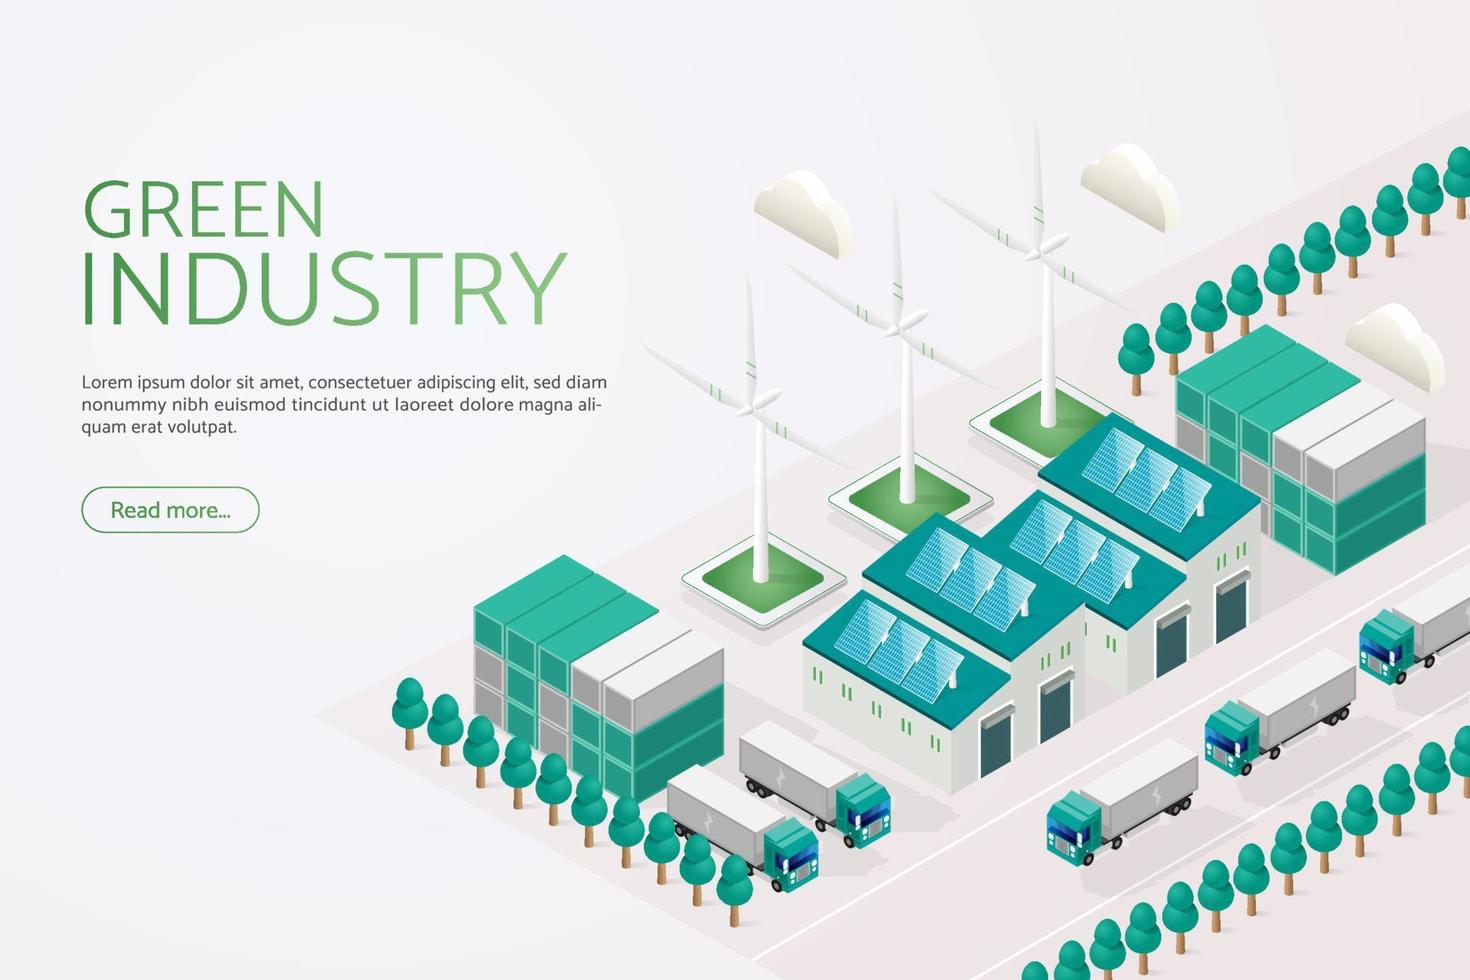 énergie électrique alternative et énergie renouvelable dans l'industrie verte. vecteur